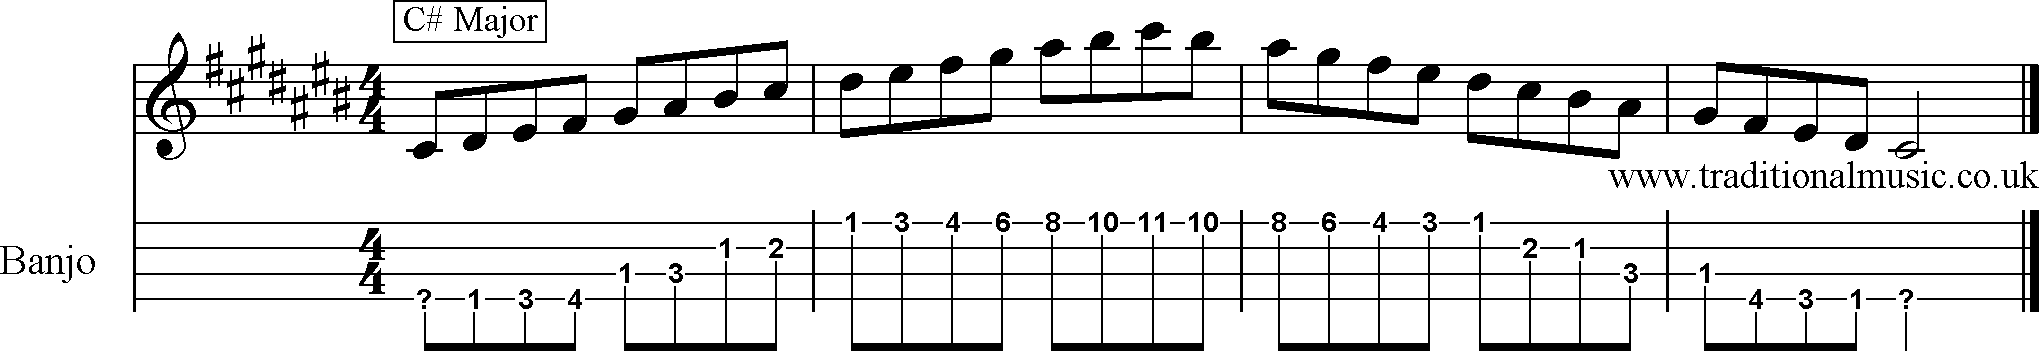 Major Scales for Banjo C# 